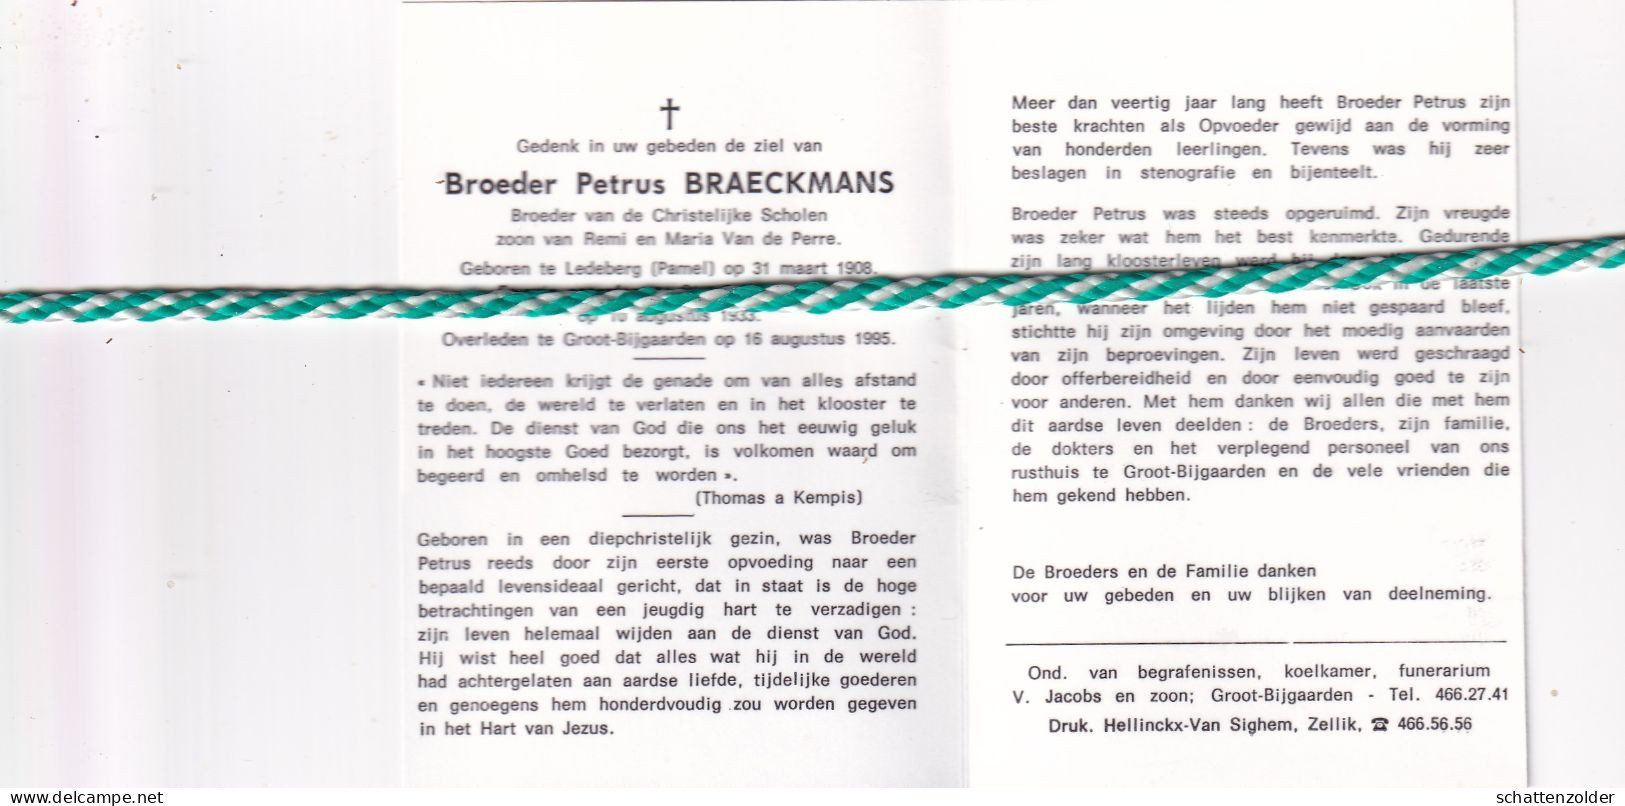 Broeder Petrus Braeckmans, Ledeberg (Pamel) 1908, Groot-Bijgaarden 1995. Foto - Esquela